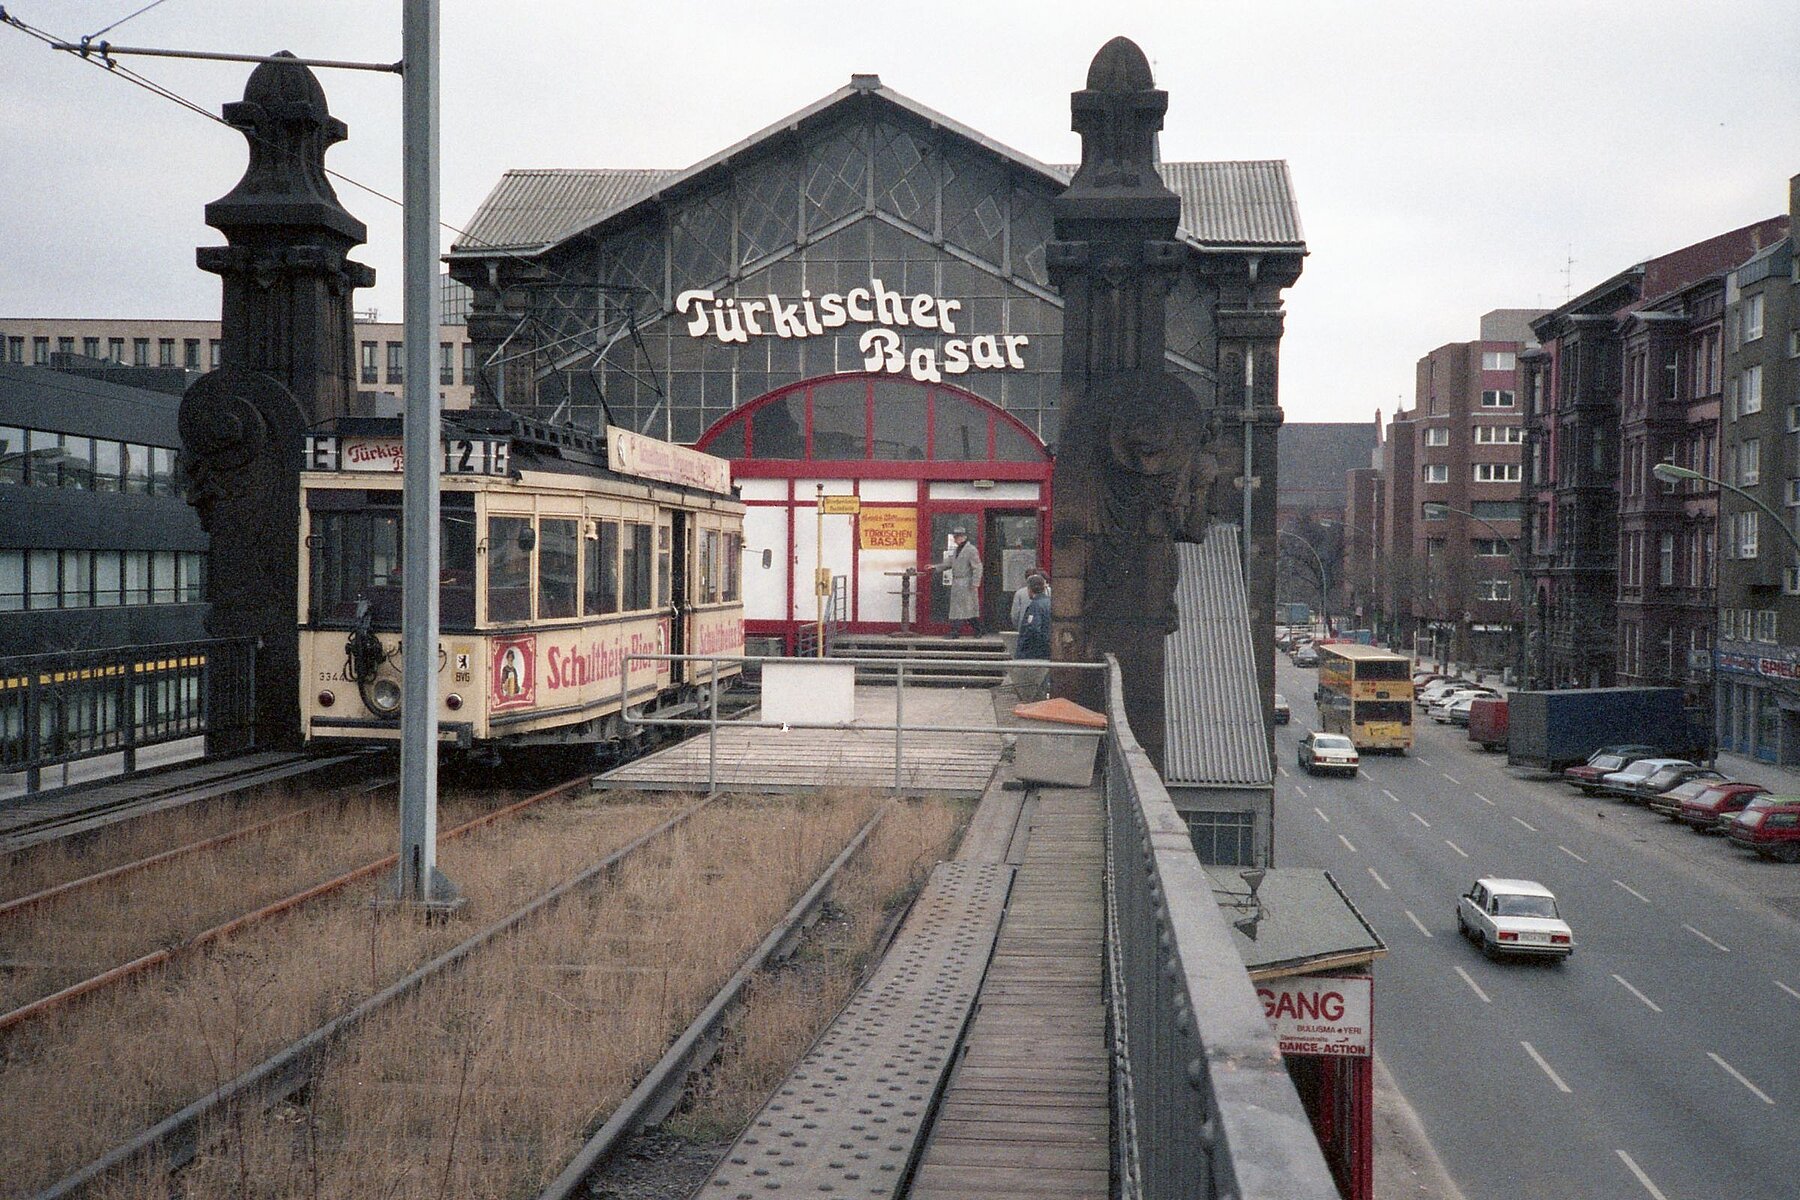 Der Hochbahnhof vom Gleisbettaus. Links im Bild die historische Straßenbahn. Über der roten Eingangstür hängt der weiße Schriftzug Türkischer Basar. 